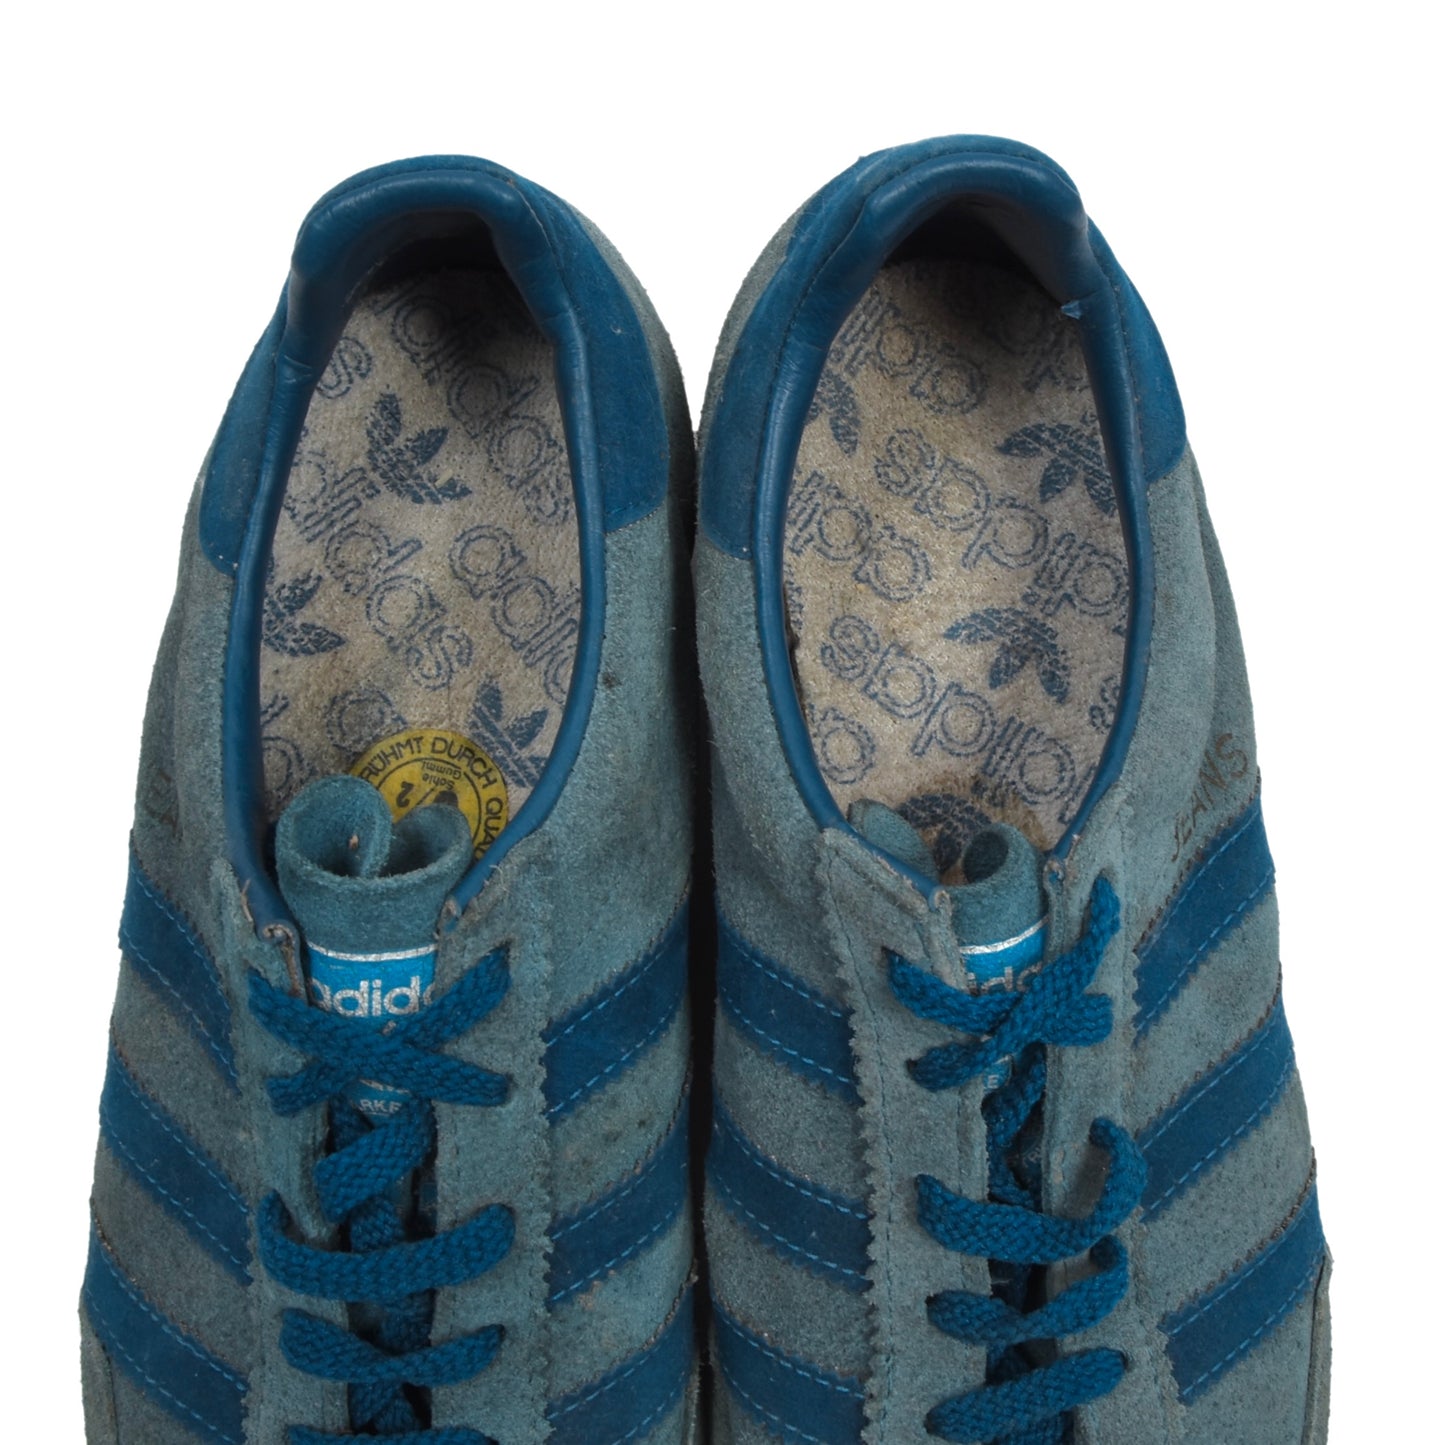 Vintage Adidas Jeans Sneakers Größe 5 1/2 - Blau